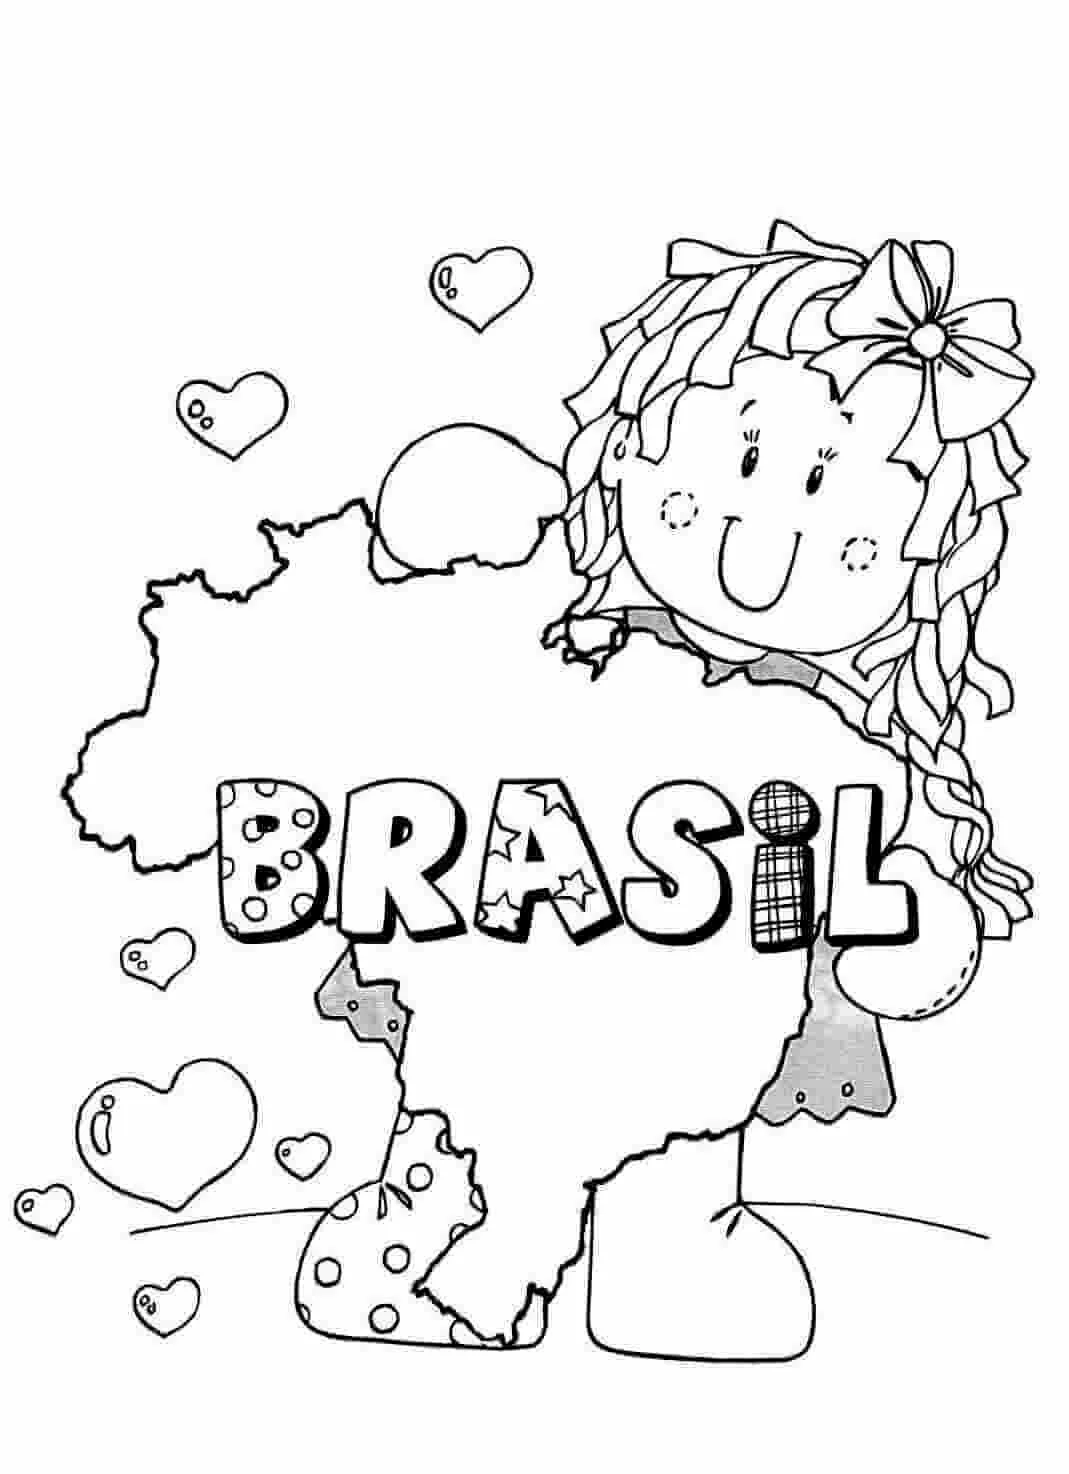 desenho para colorir da bandeira brasileir